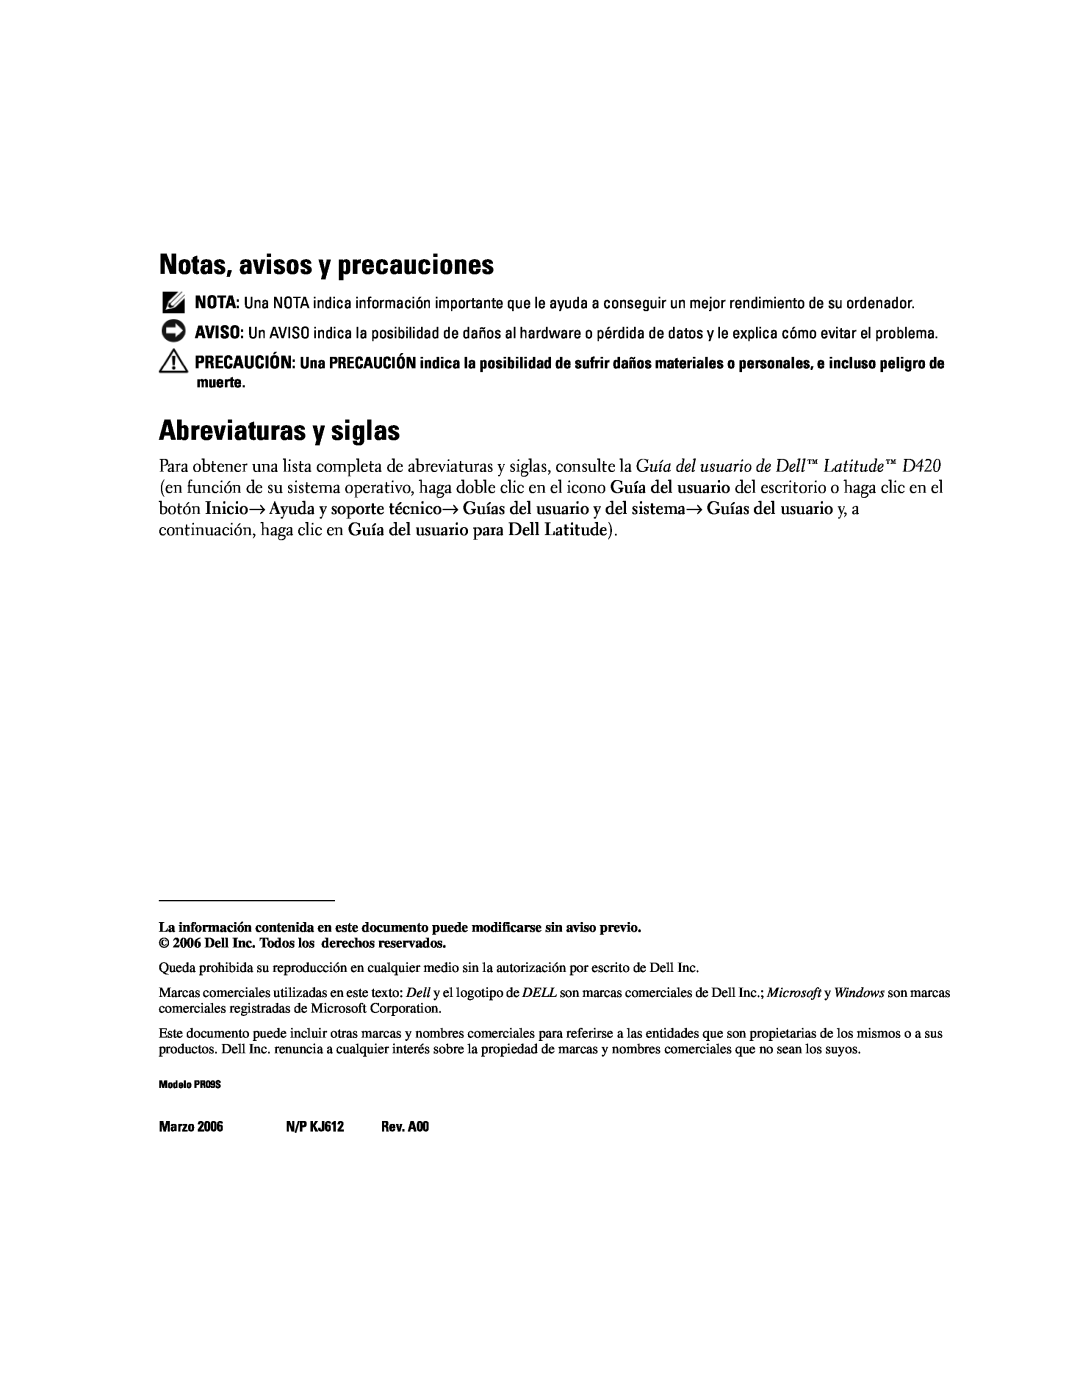 Dell Model PR09S setup guide Notas, avisos y precauciones, Abreviaturas y siglas, Marzo, N/P KJ612 